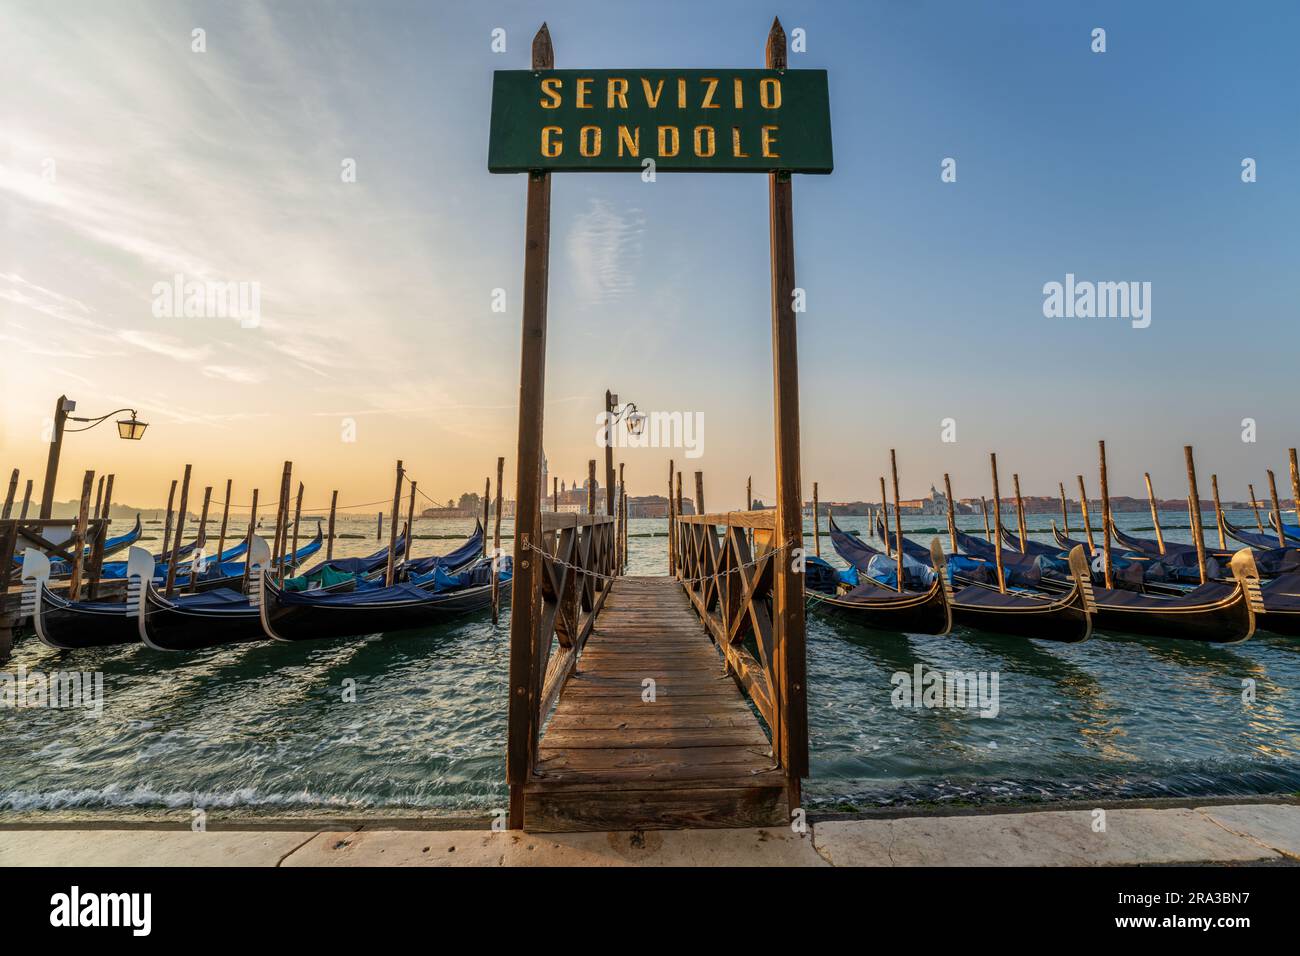 Les gondoles amarrées le long de la jetée avec le panneau Gondola Service au lever du soleil sur le canal près de Saint-Marc à Venise, Italie. Cette ligne d'horizon italienne de Venise est incroyable. Banque D'Images